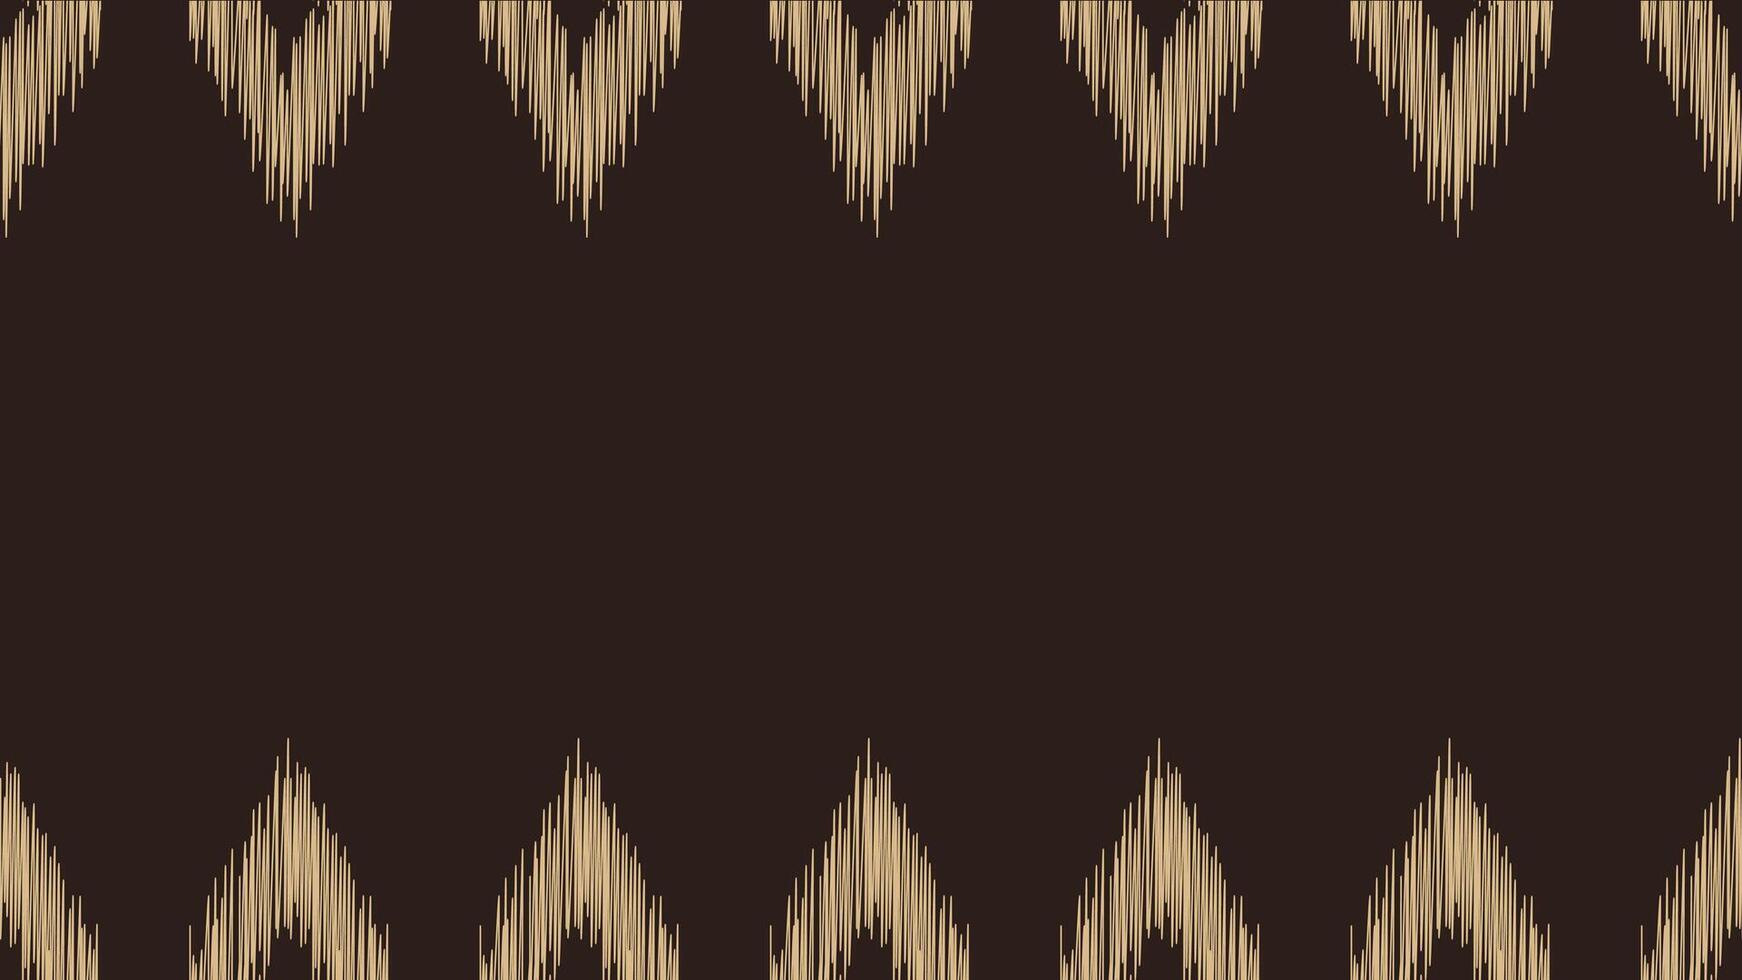 traditioneel etnisch ikat motief kleding stof patroon meetkundig stijl.afrikaans ikat borduurwerk etnisch oosters patroon bruin achtergrond behang. abstract,vector,illustratie.textuur,frame,decoratie. vector